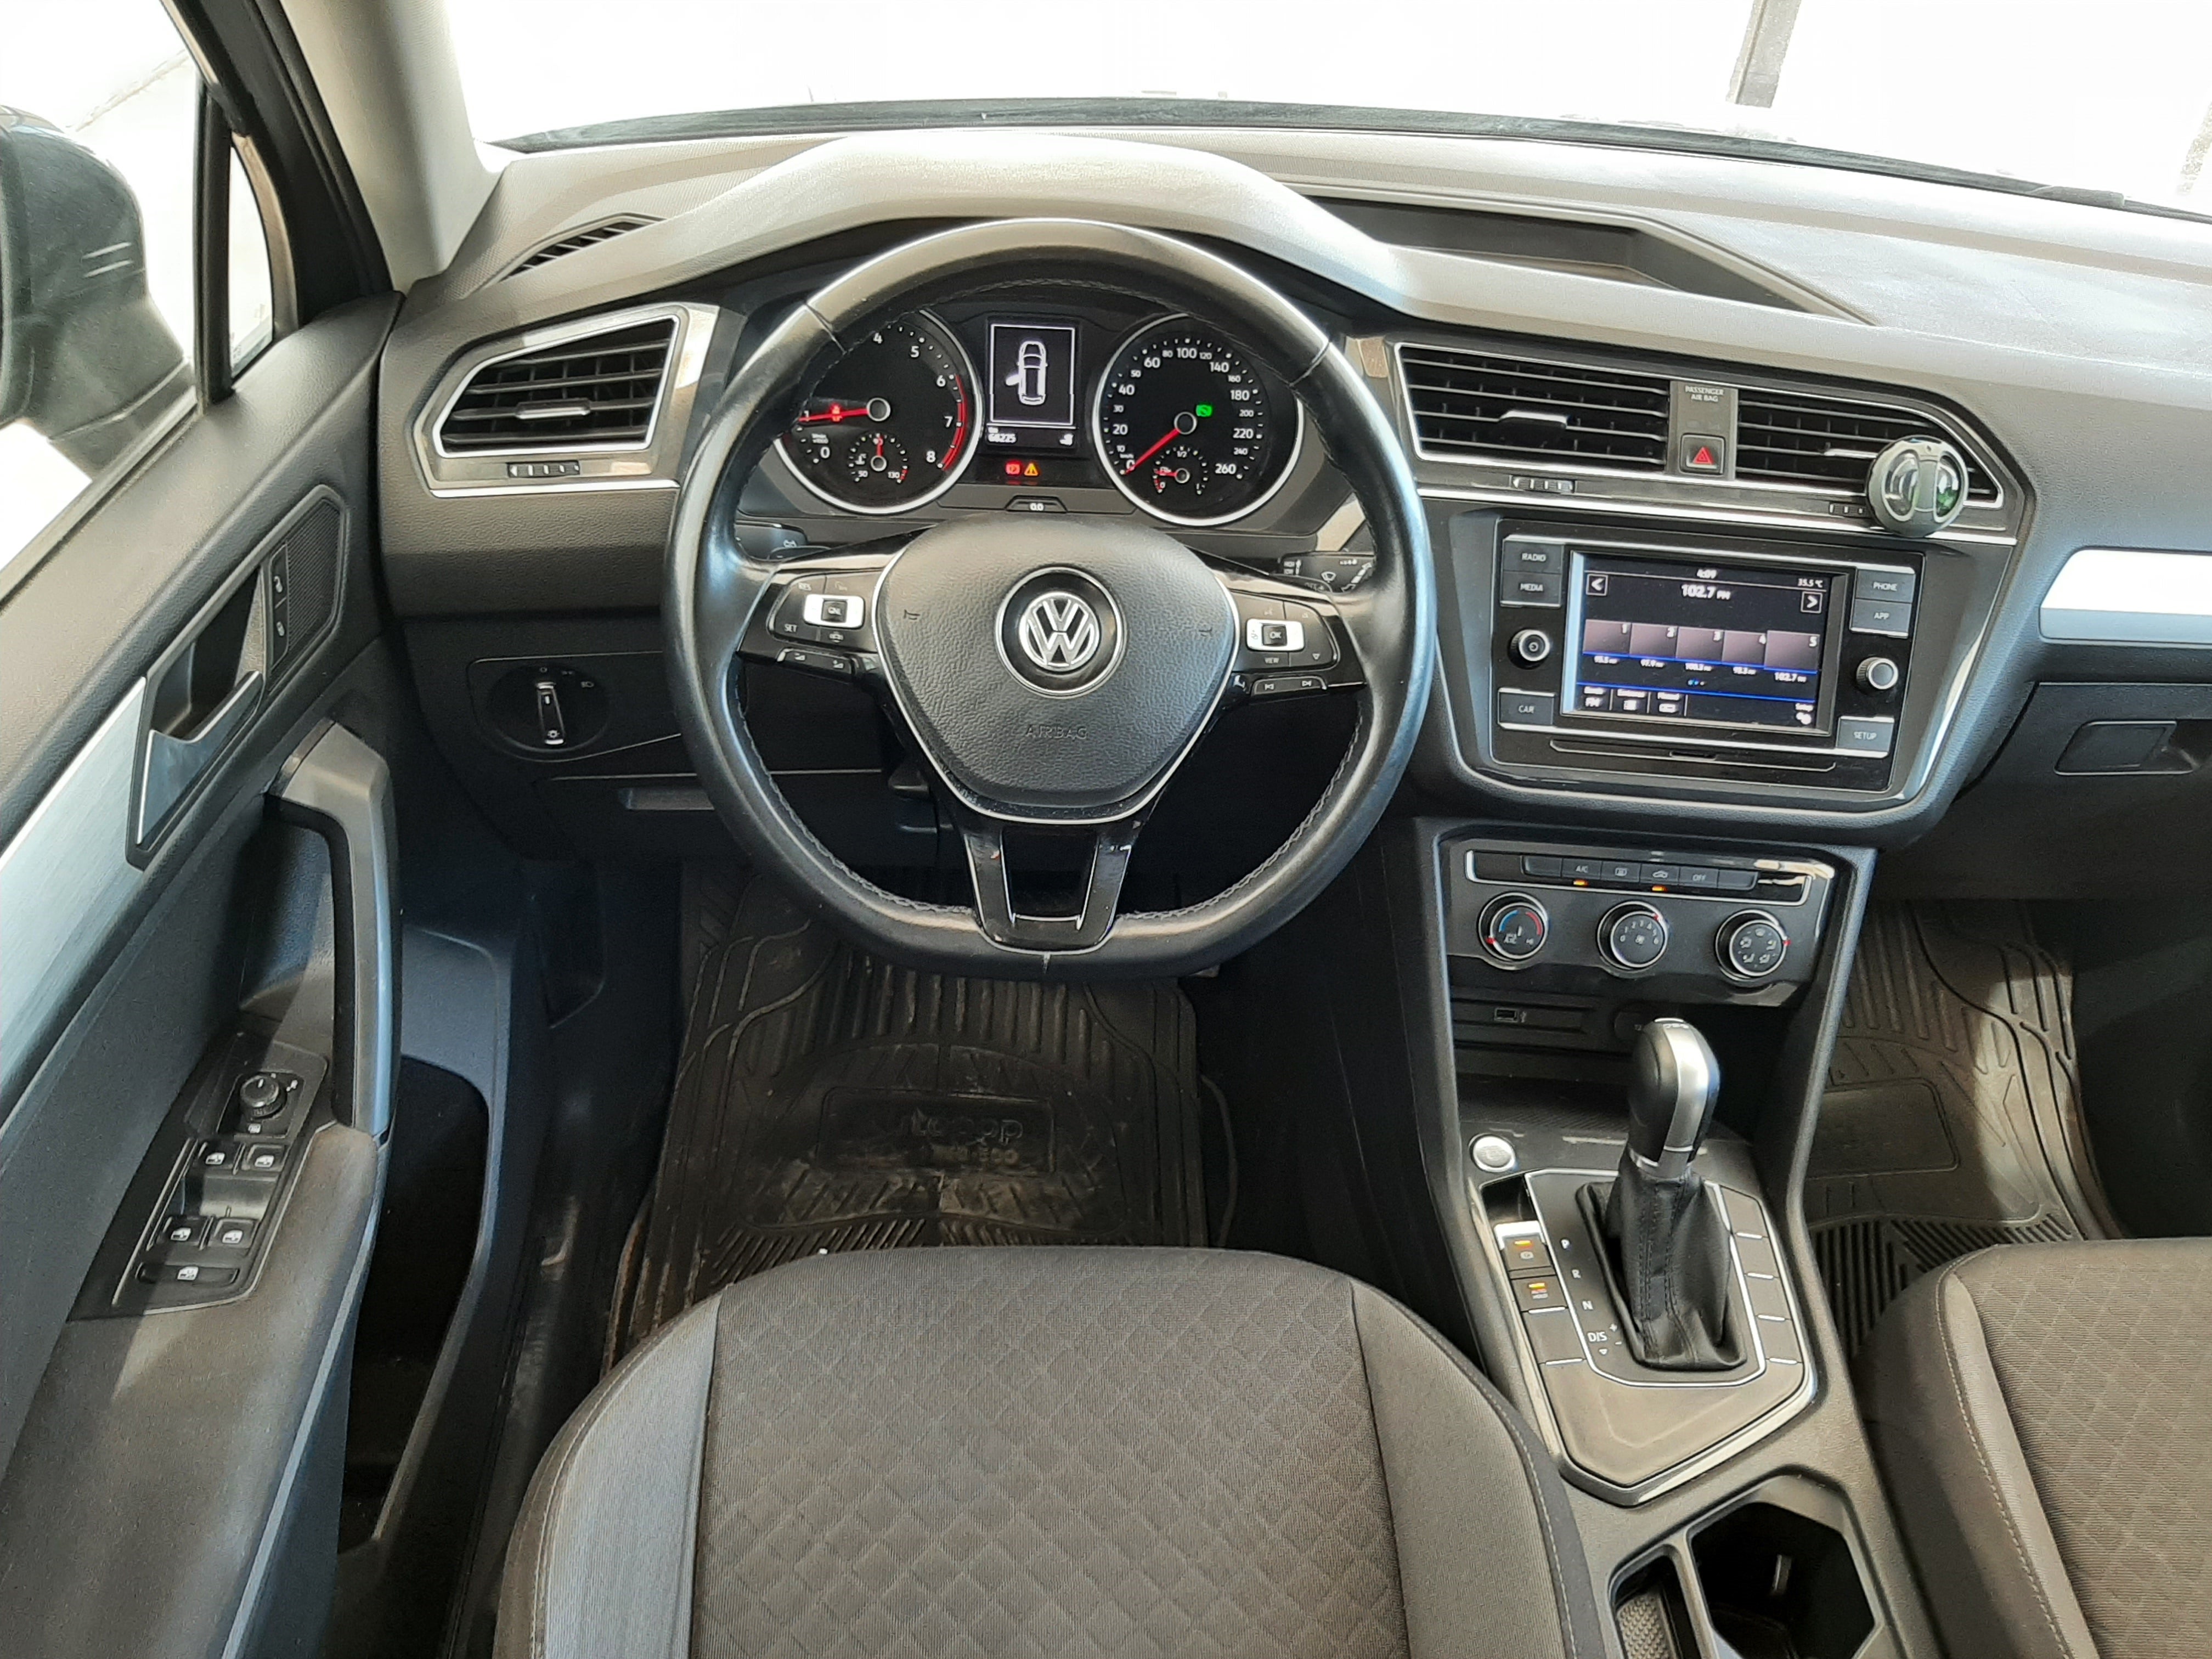 2019 Volkswagen TIGUAN 5 PTS TRENDLINE PLUS 14T DSG RA-17